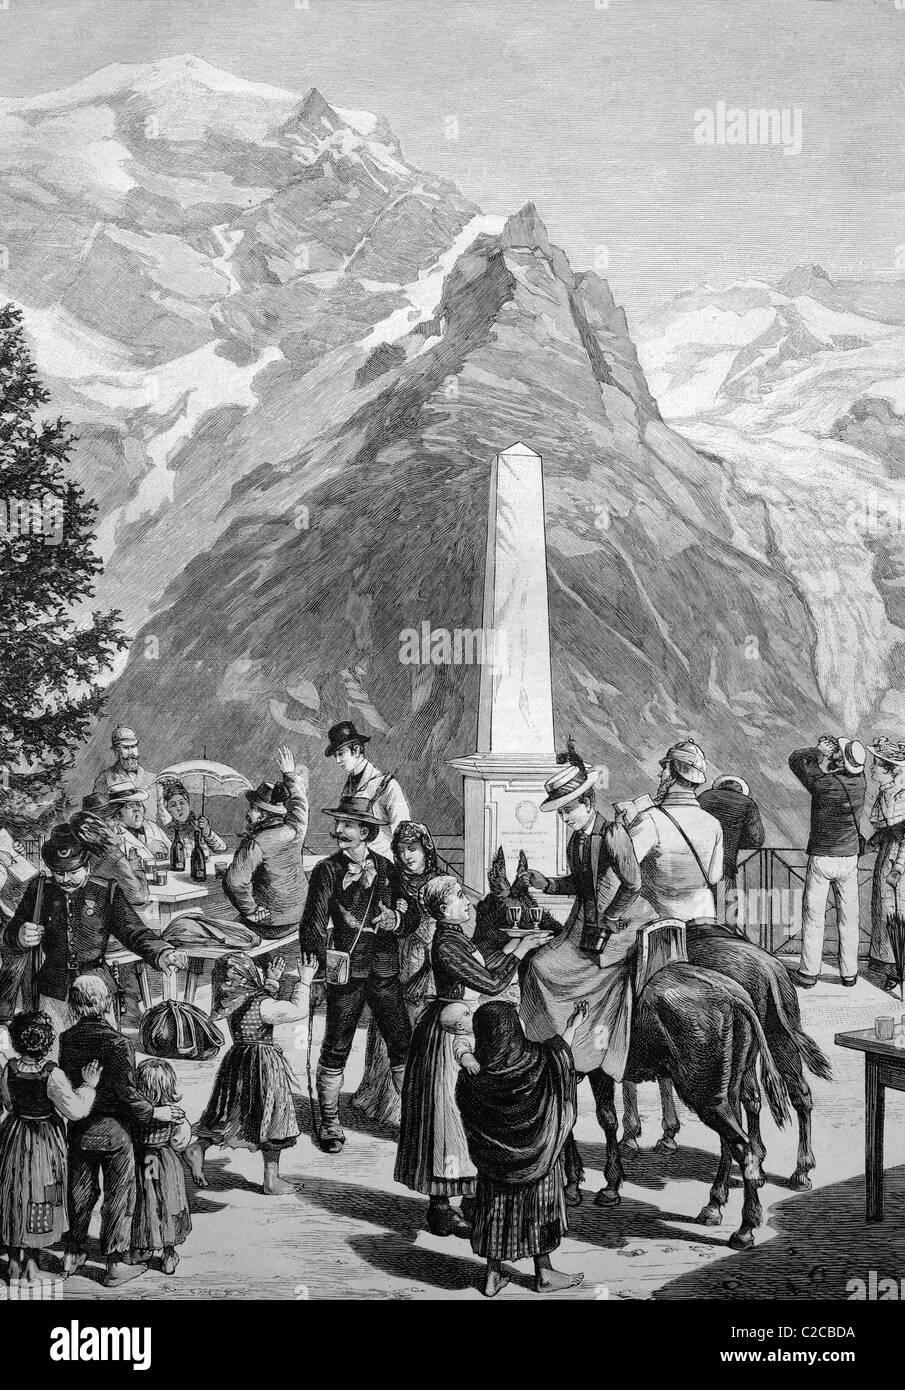 Reisende, die anhalten an der weißen Knott auf der Stelvio Pass, Italien, historische Abbildung, ca. 1893 Stockfoto